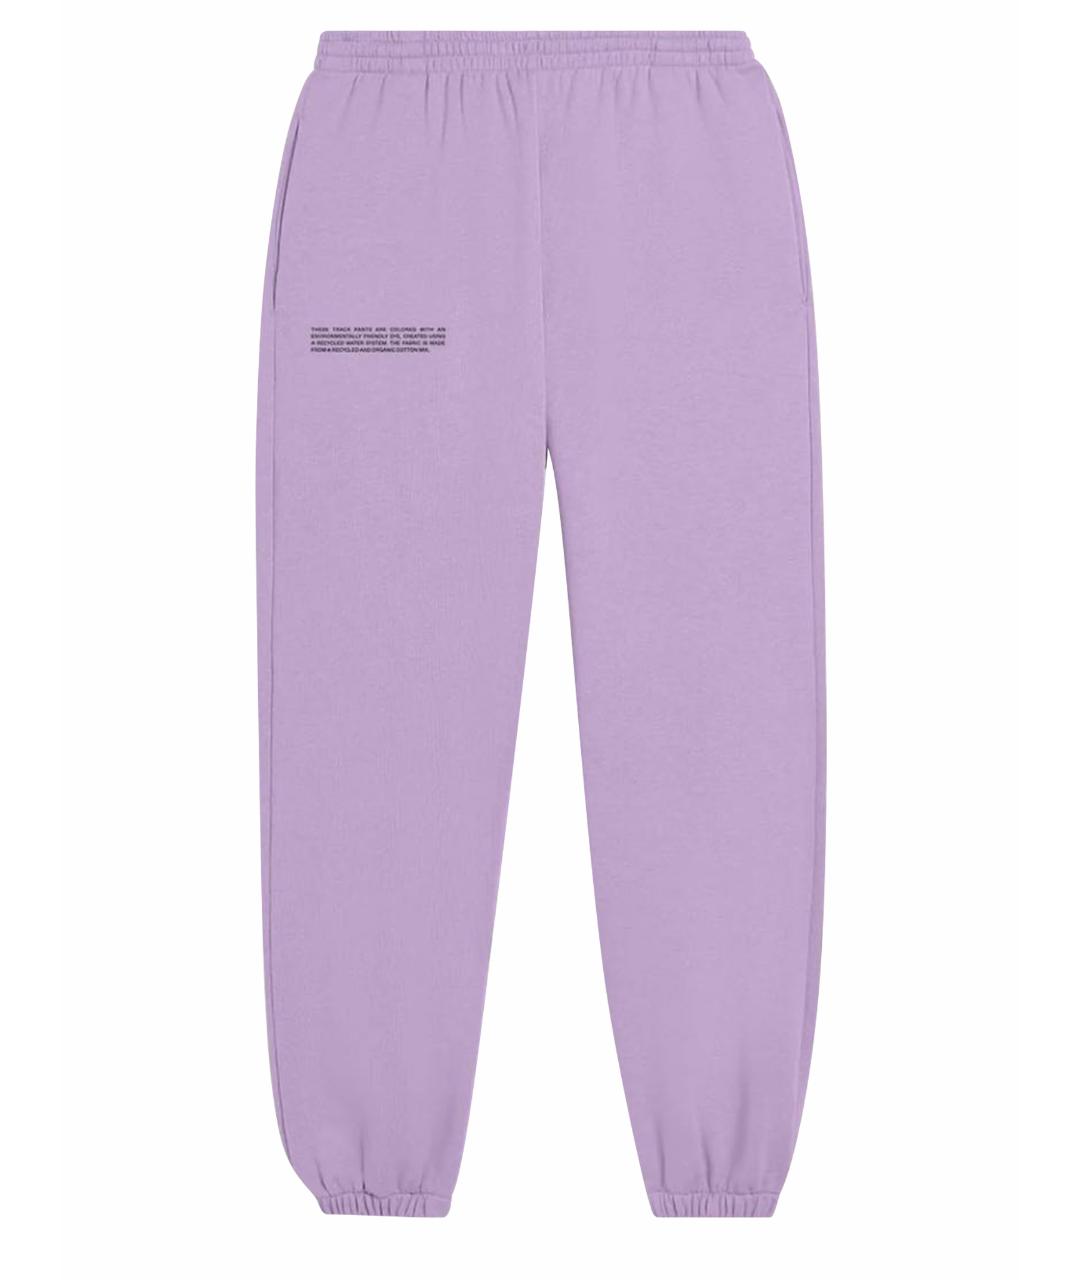 THE PANGAIA Фиолетовые хлопковые спортивные брюки и шорты, фото 1